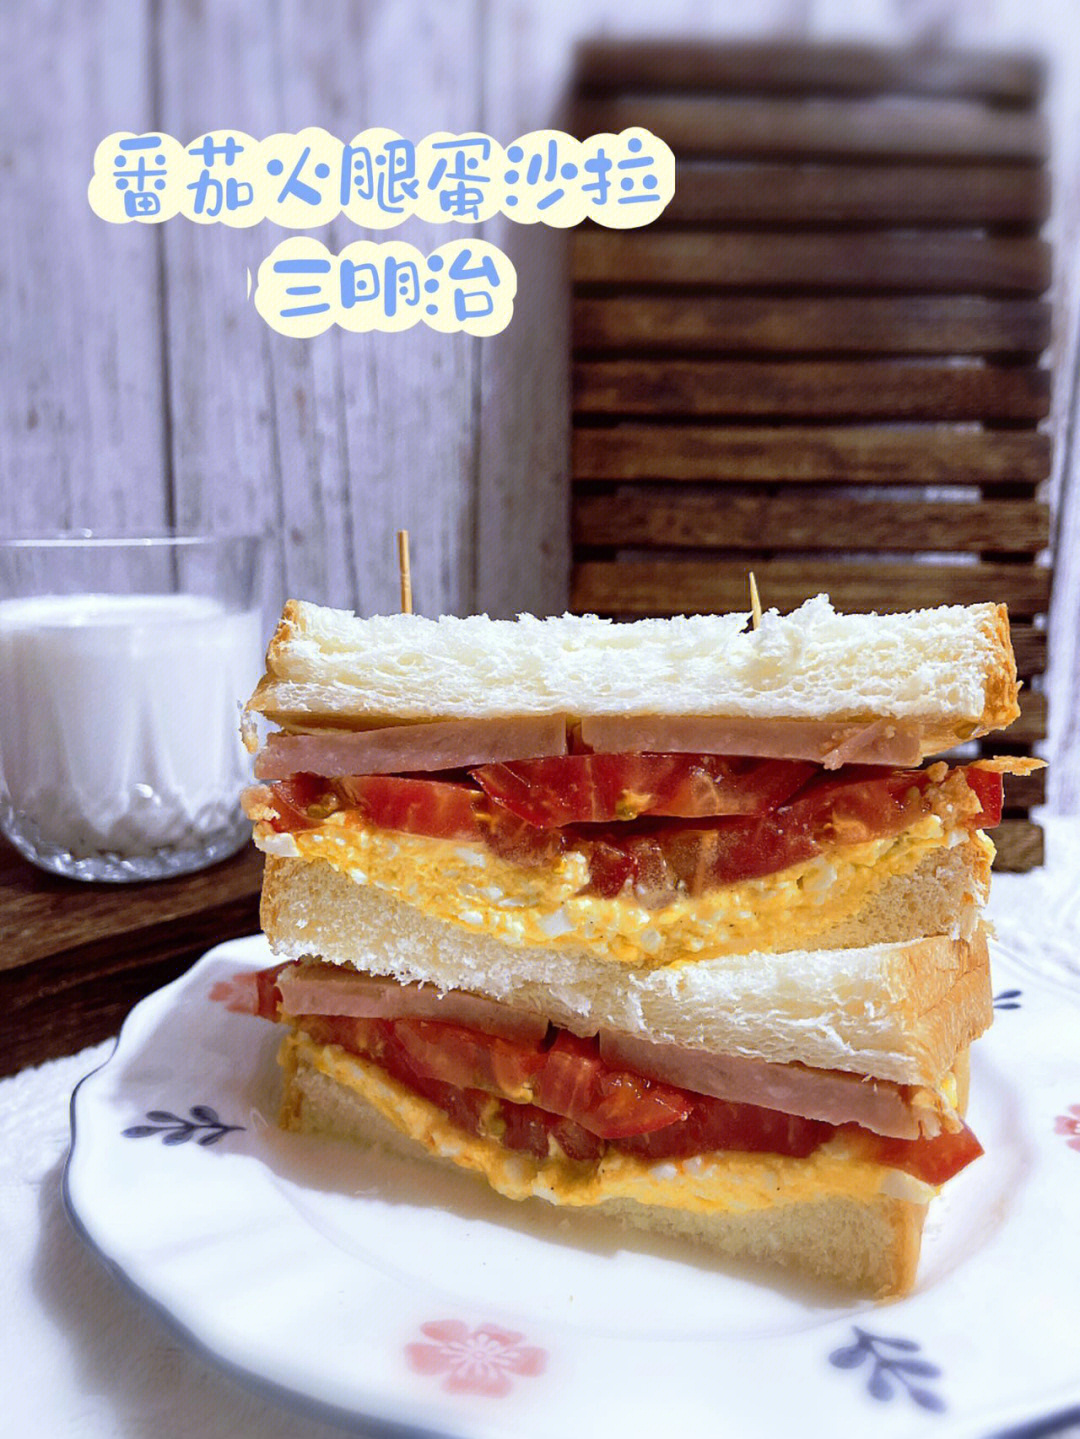 美食小记超清爽的番茄火腿蛋沙拉三明治